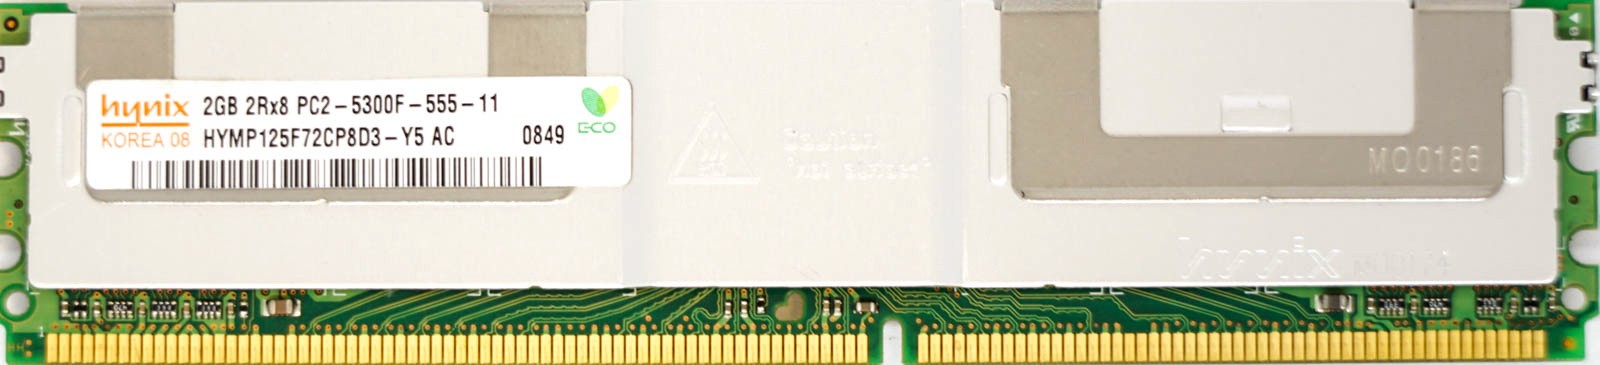 Hynix 2GB Hynix DDR2 PC2-5300F-555-11 667Mhz 2Rx8 ECC FB-DIMM HYMP125F72CP8D5-Y5 AB-C 